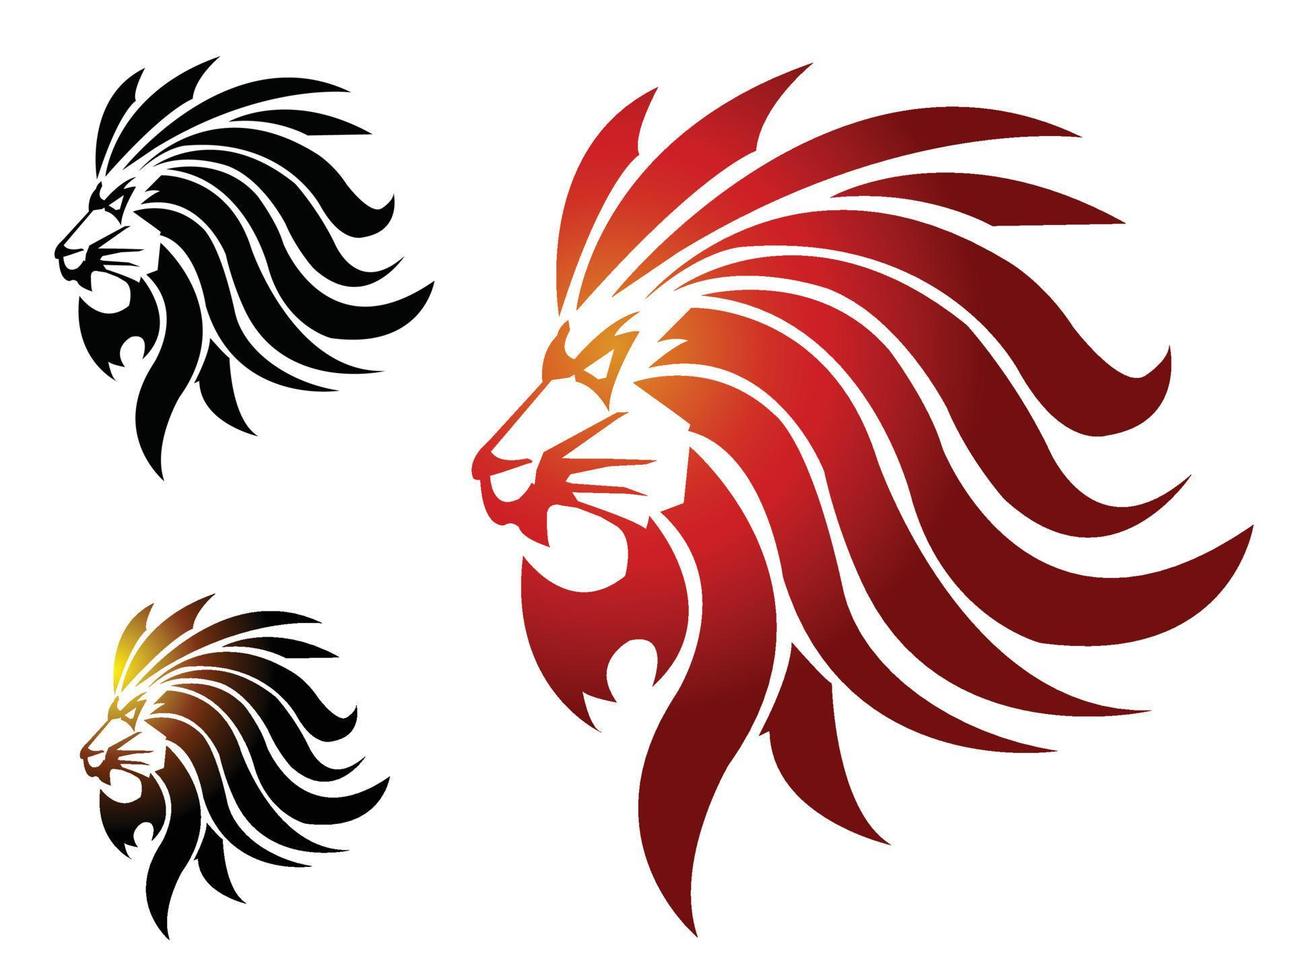 Ilustración de cabeza de león vector